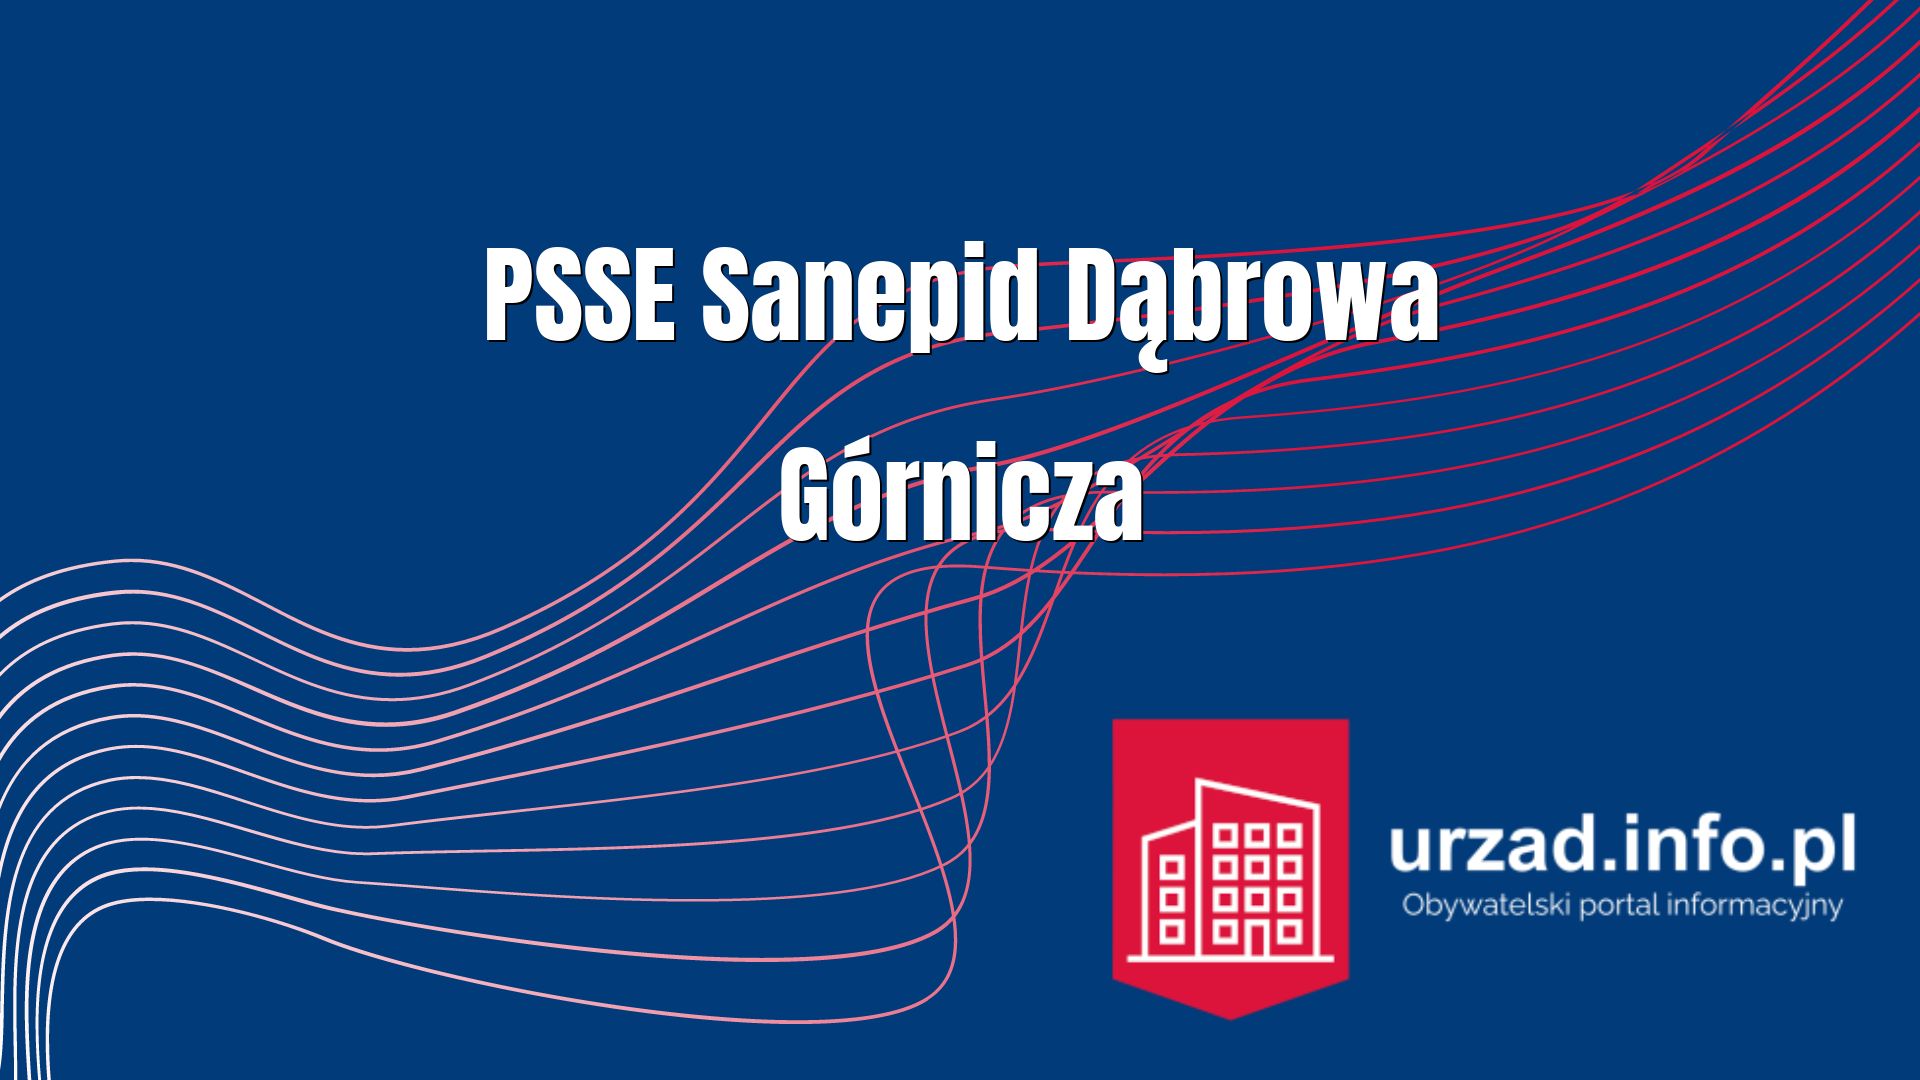 Sanepid Dąbrowa Górnicza – Powiatowa Stacja Sanitarno-Epidemiologiczna w Dąbrowie Górniczej